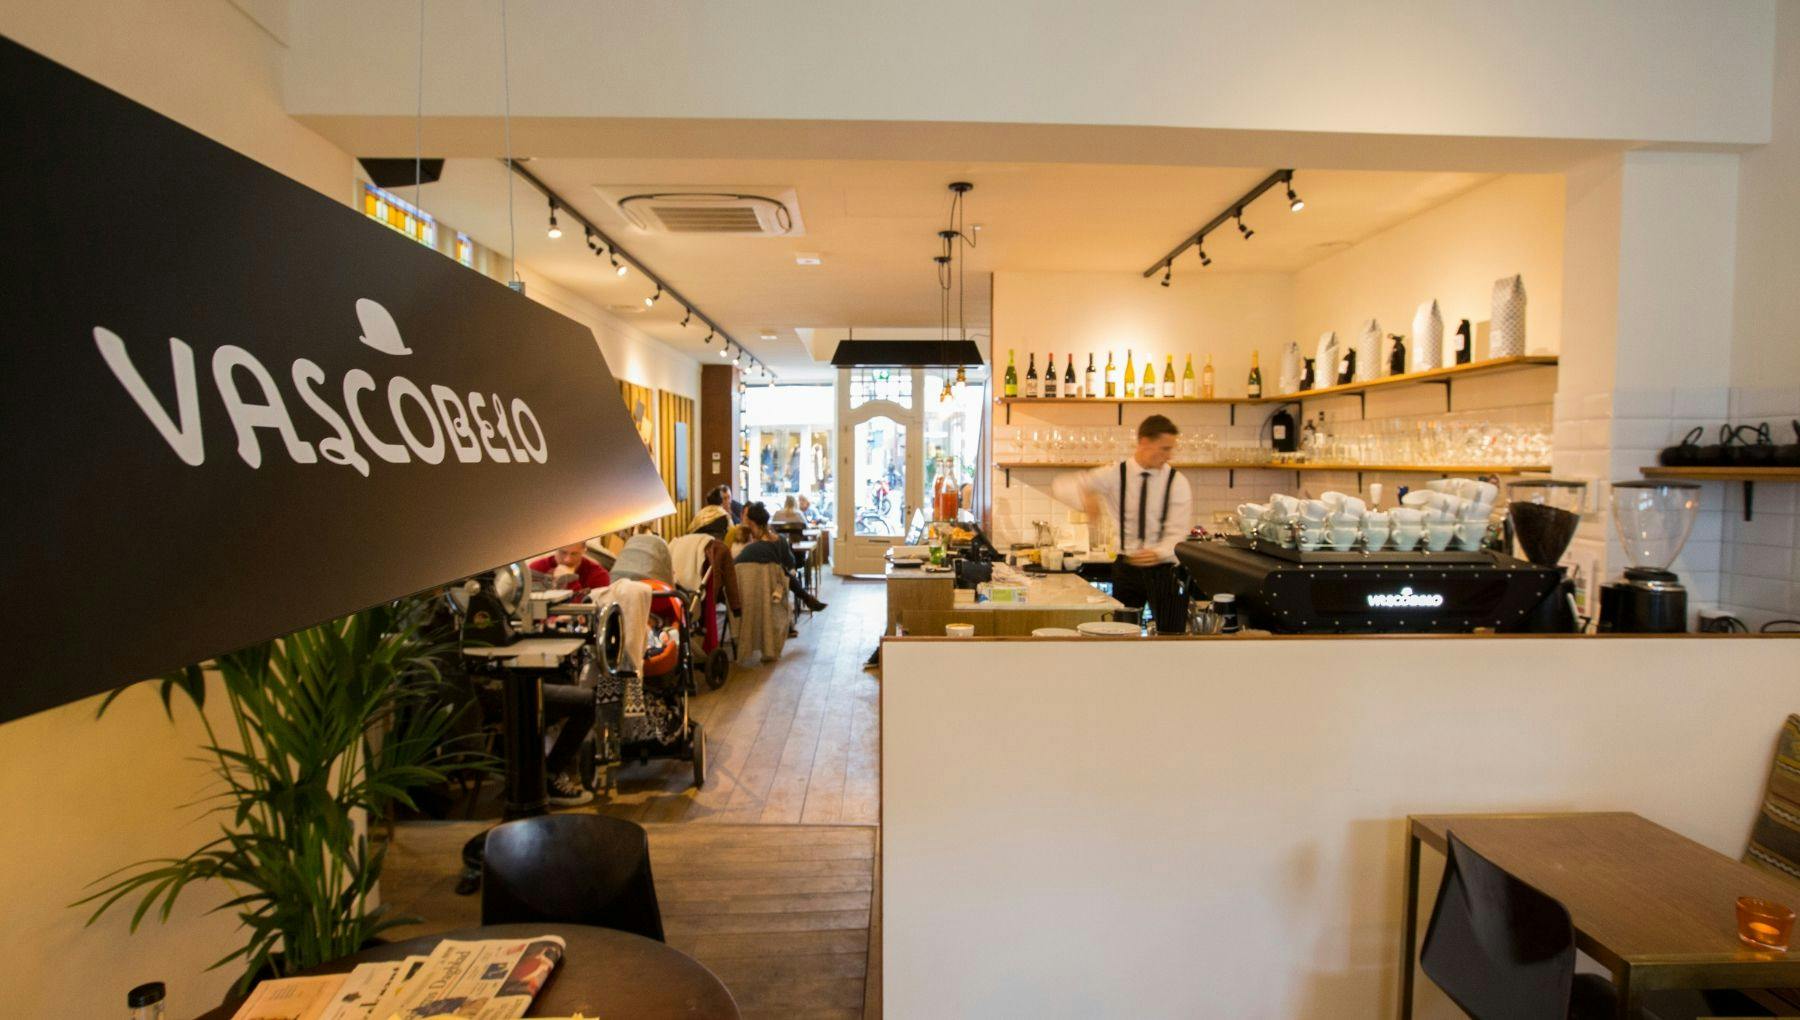 Vascobelo café interior Haarlem